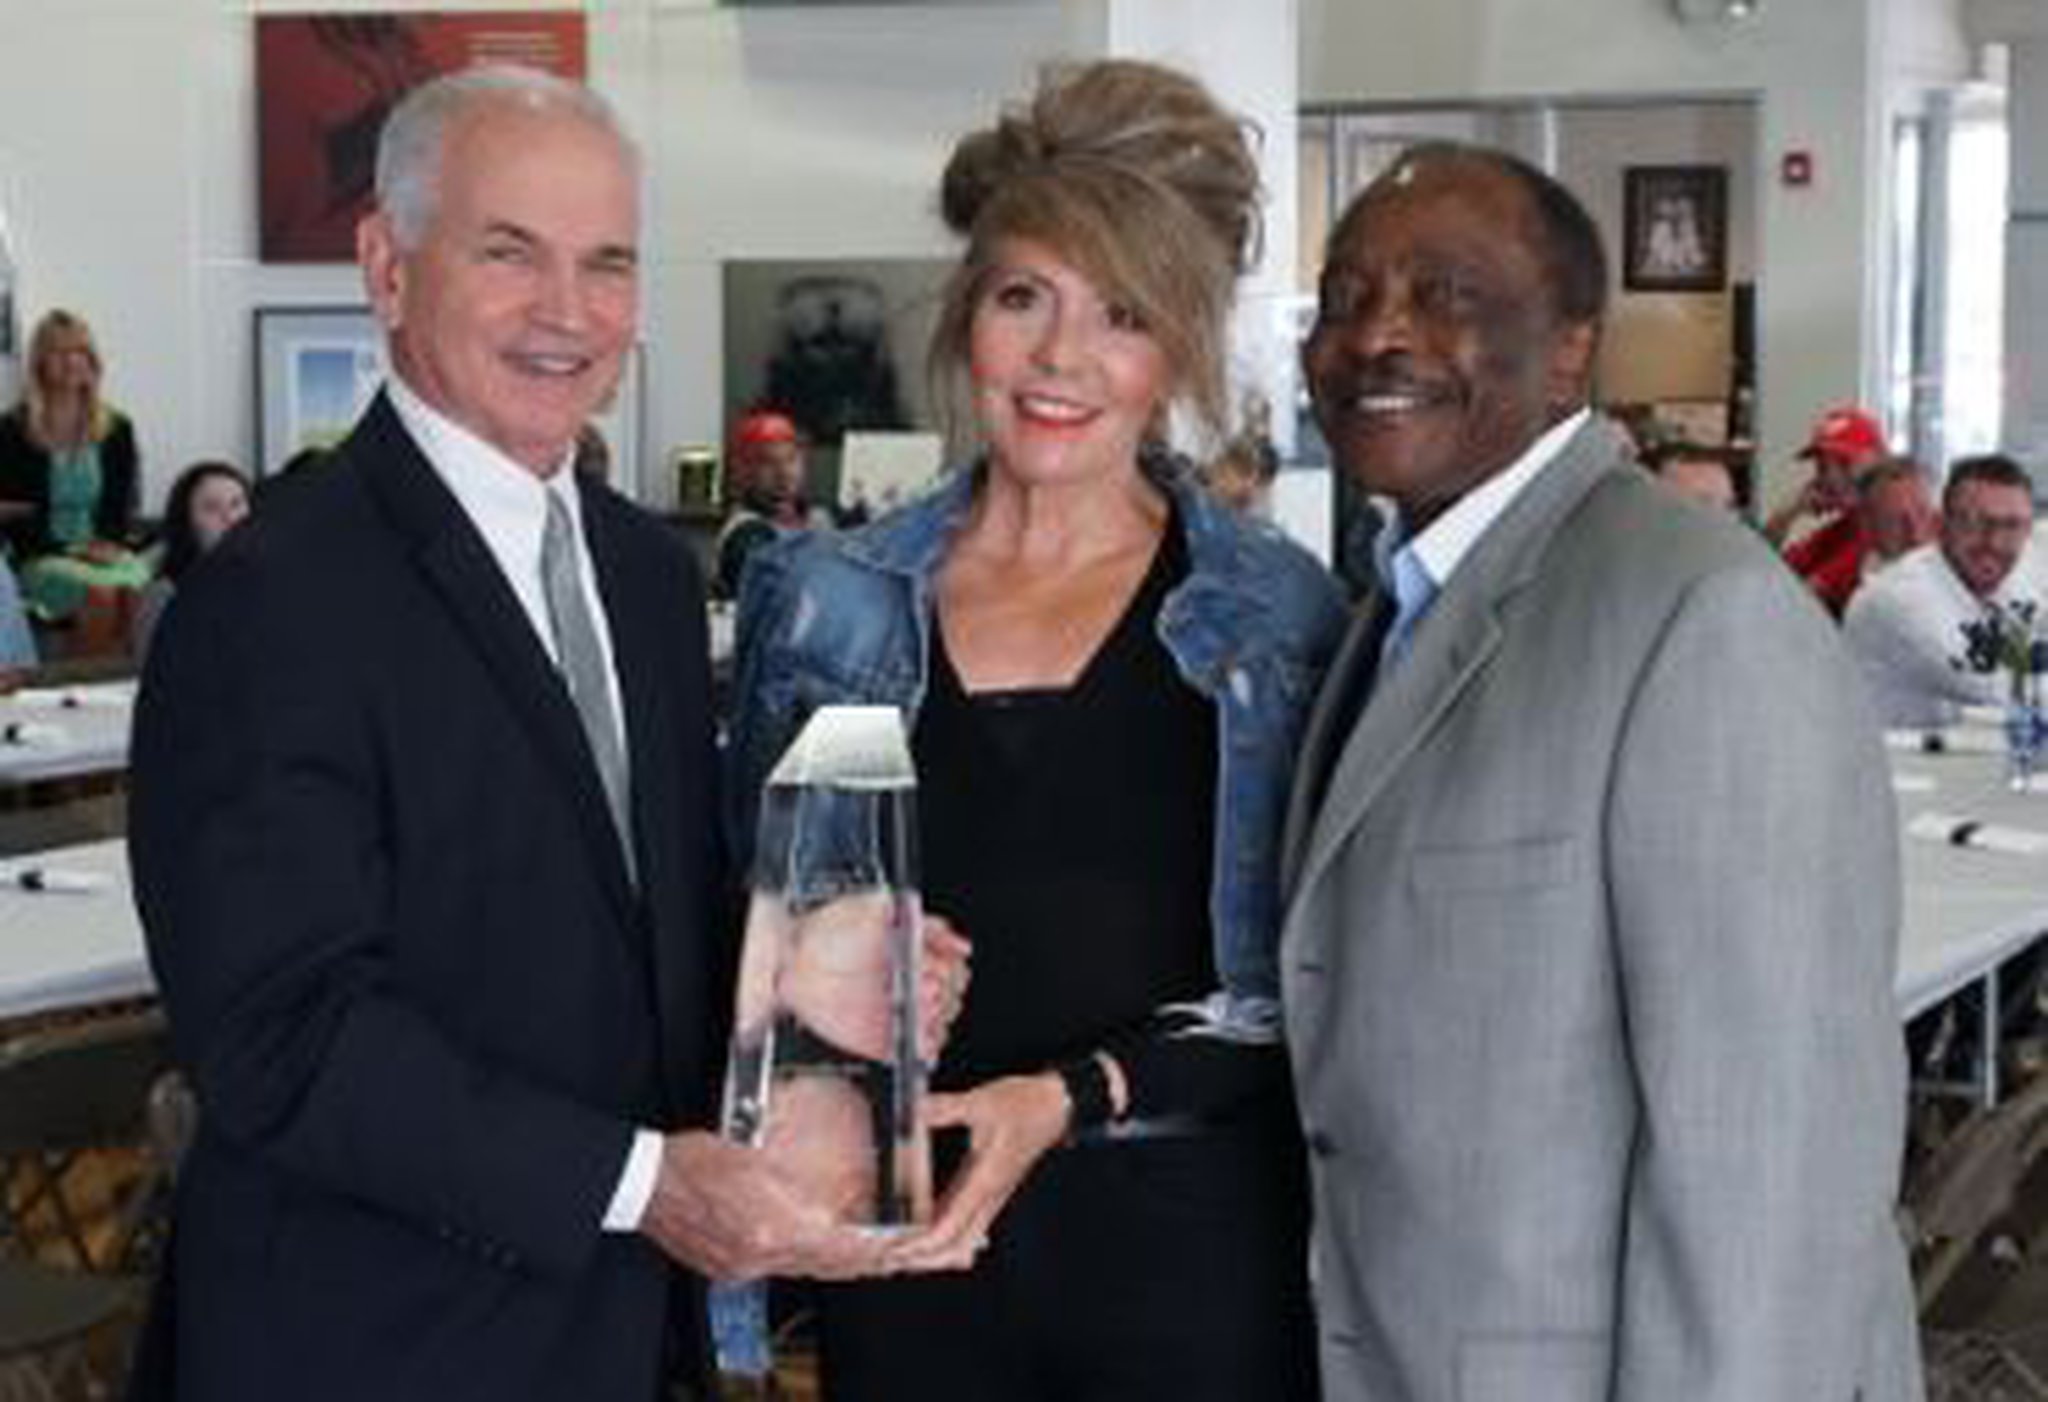 Joe Morgan Honda wins Honda's President's Award again